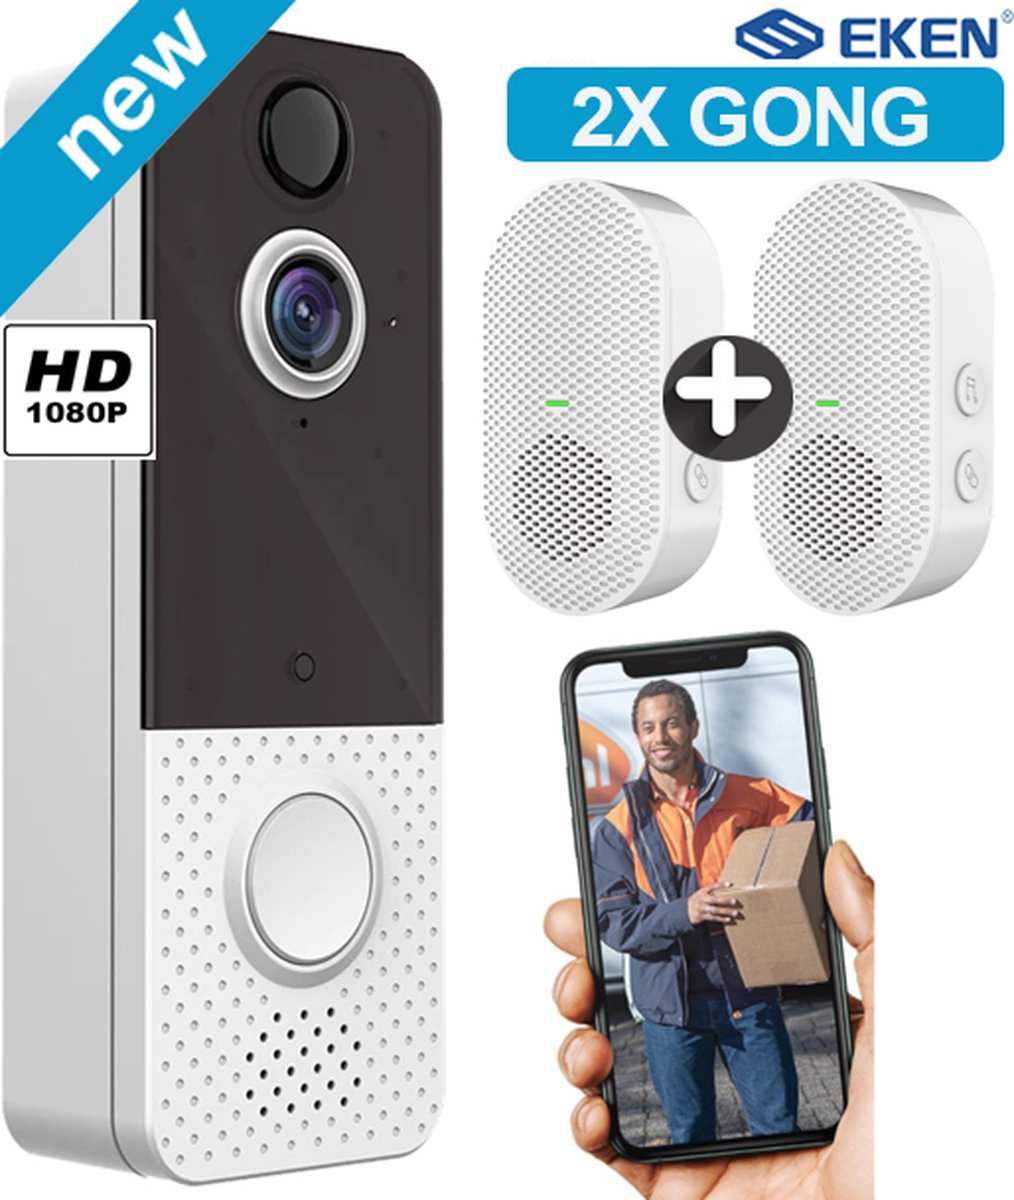 EKEN T8 - deurbel met camera – 2x Gong – Draadloze deurbel met camera – inclusief gong + 2 oplaadbare batterijen – Video deurbel